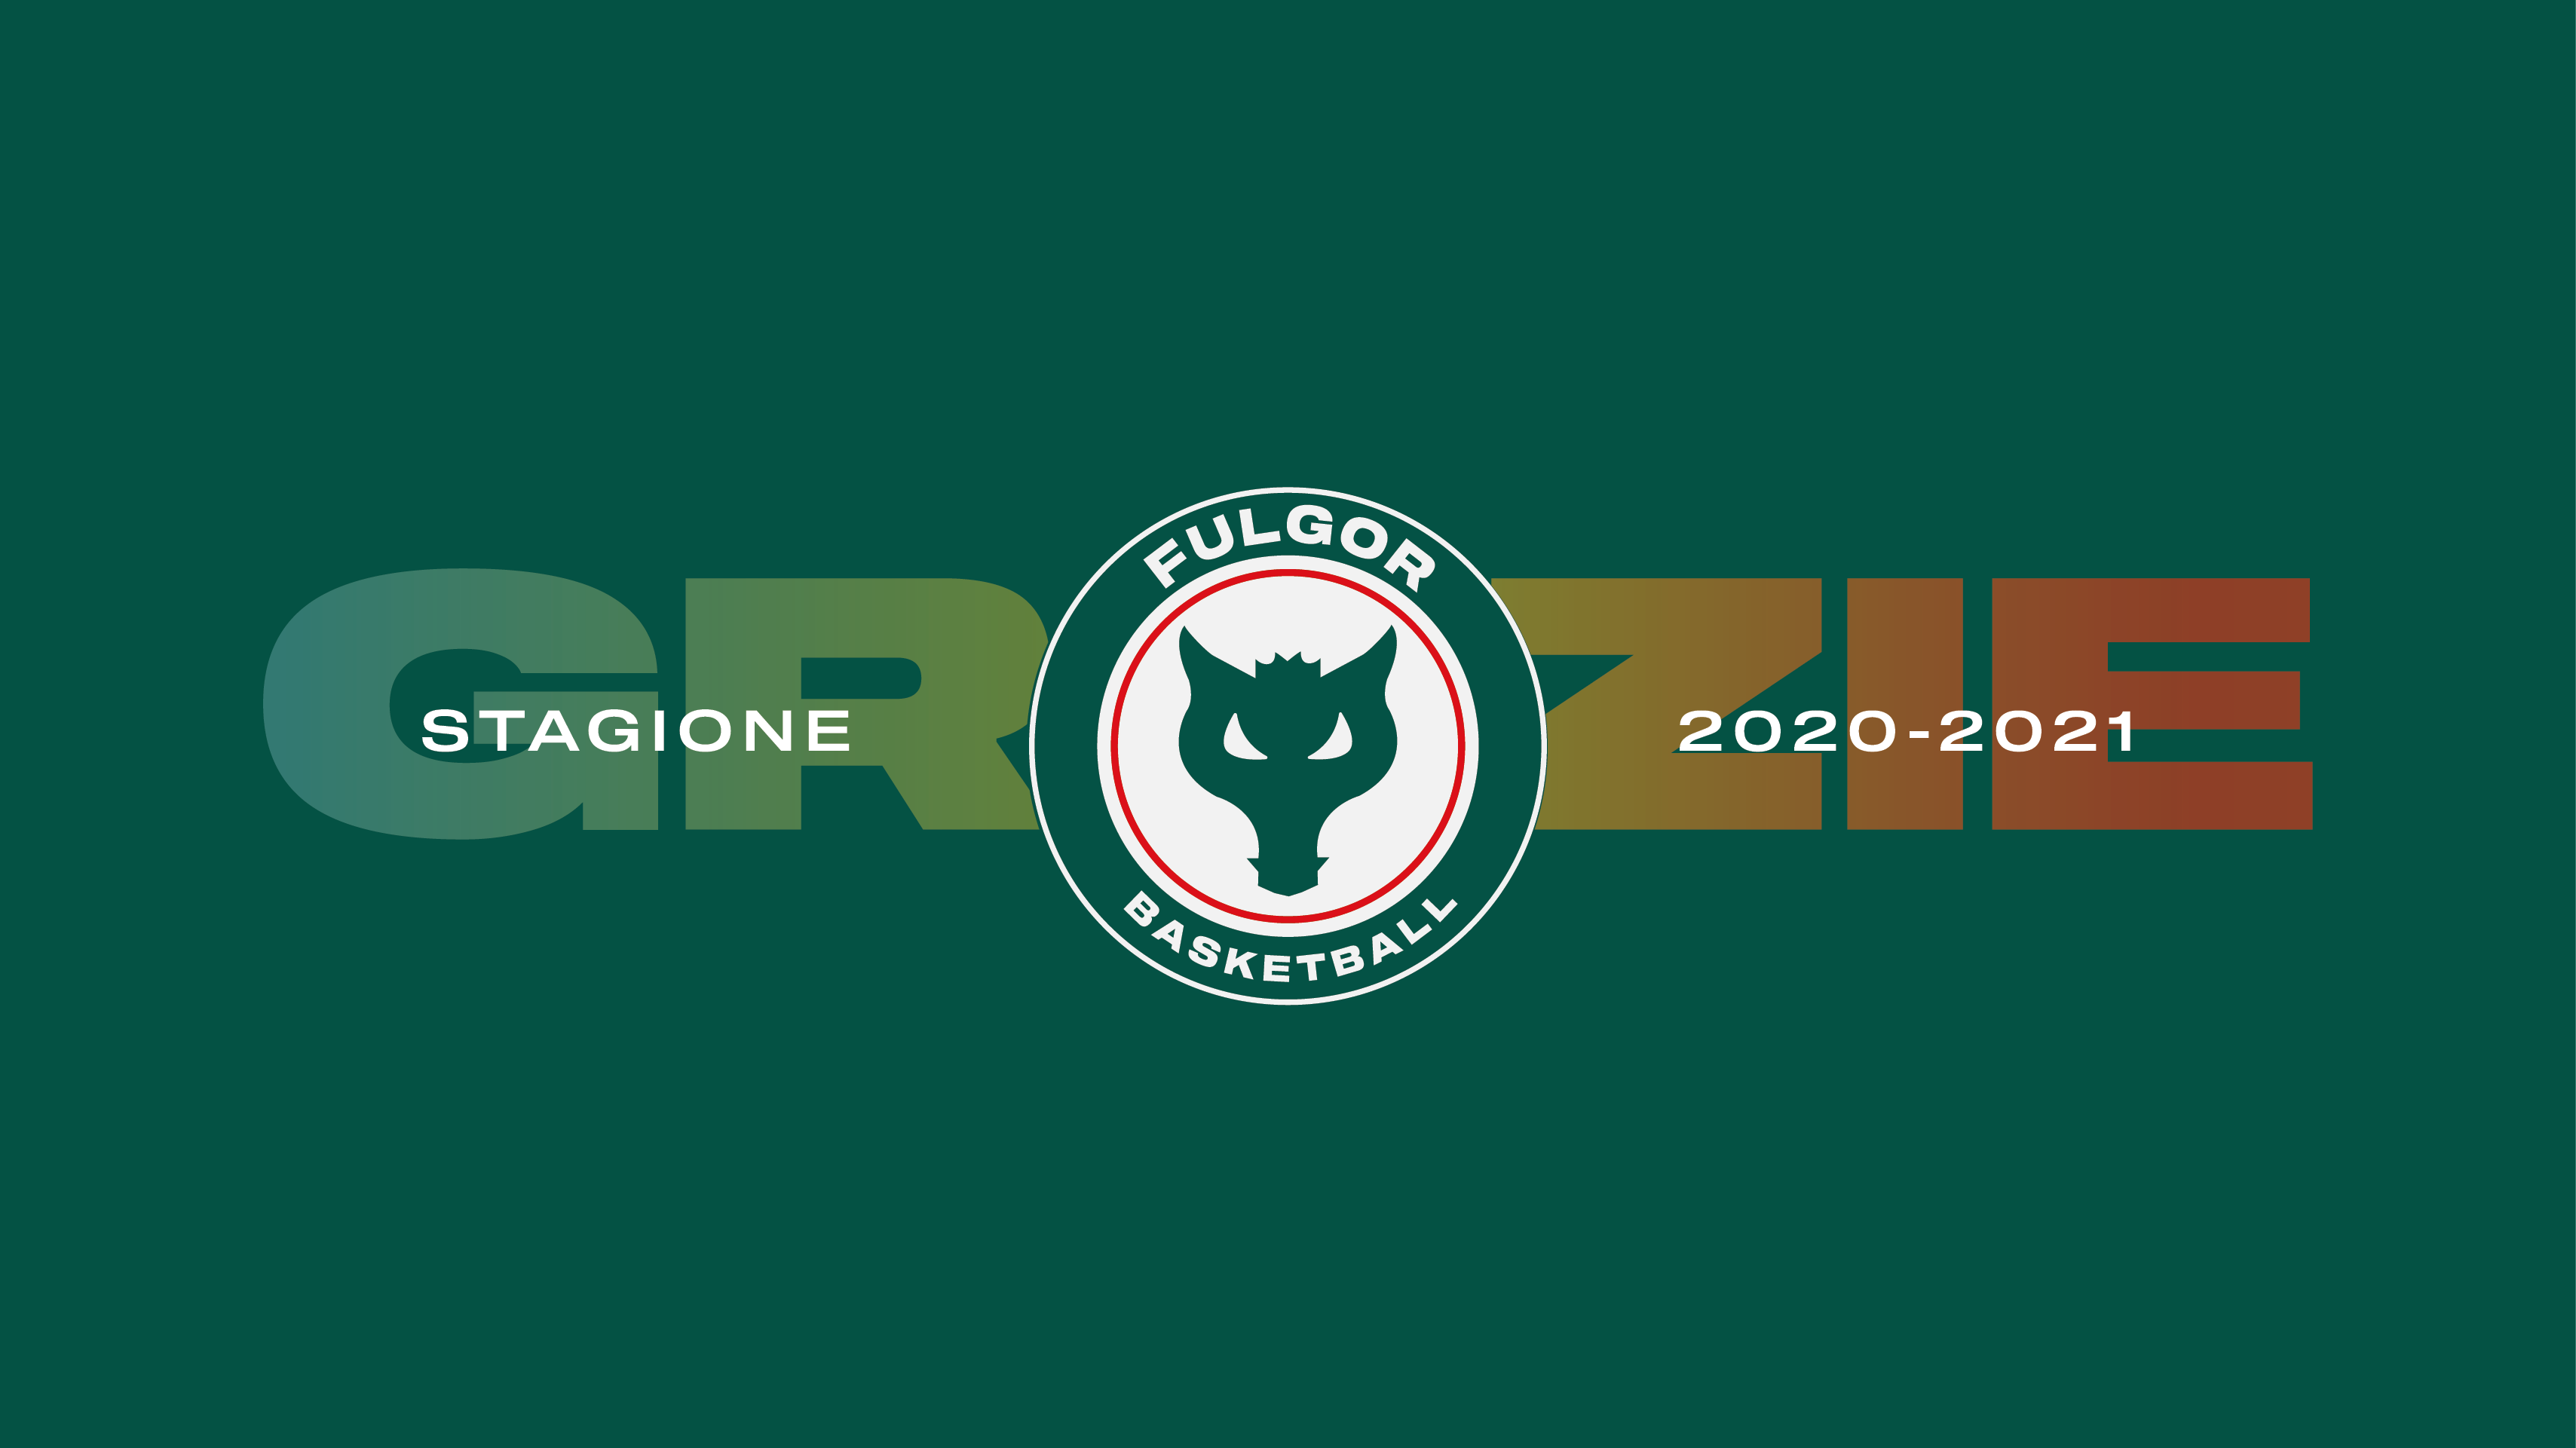 Stagione 2020-2021, i ringraziamenti della Paffoni Fulgor Basket